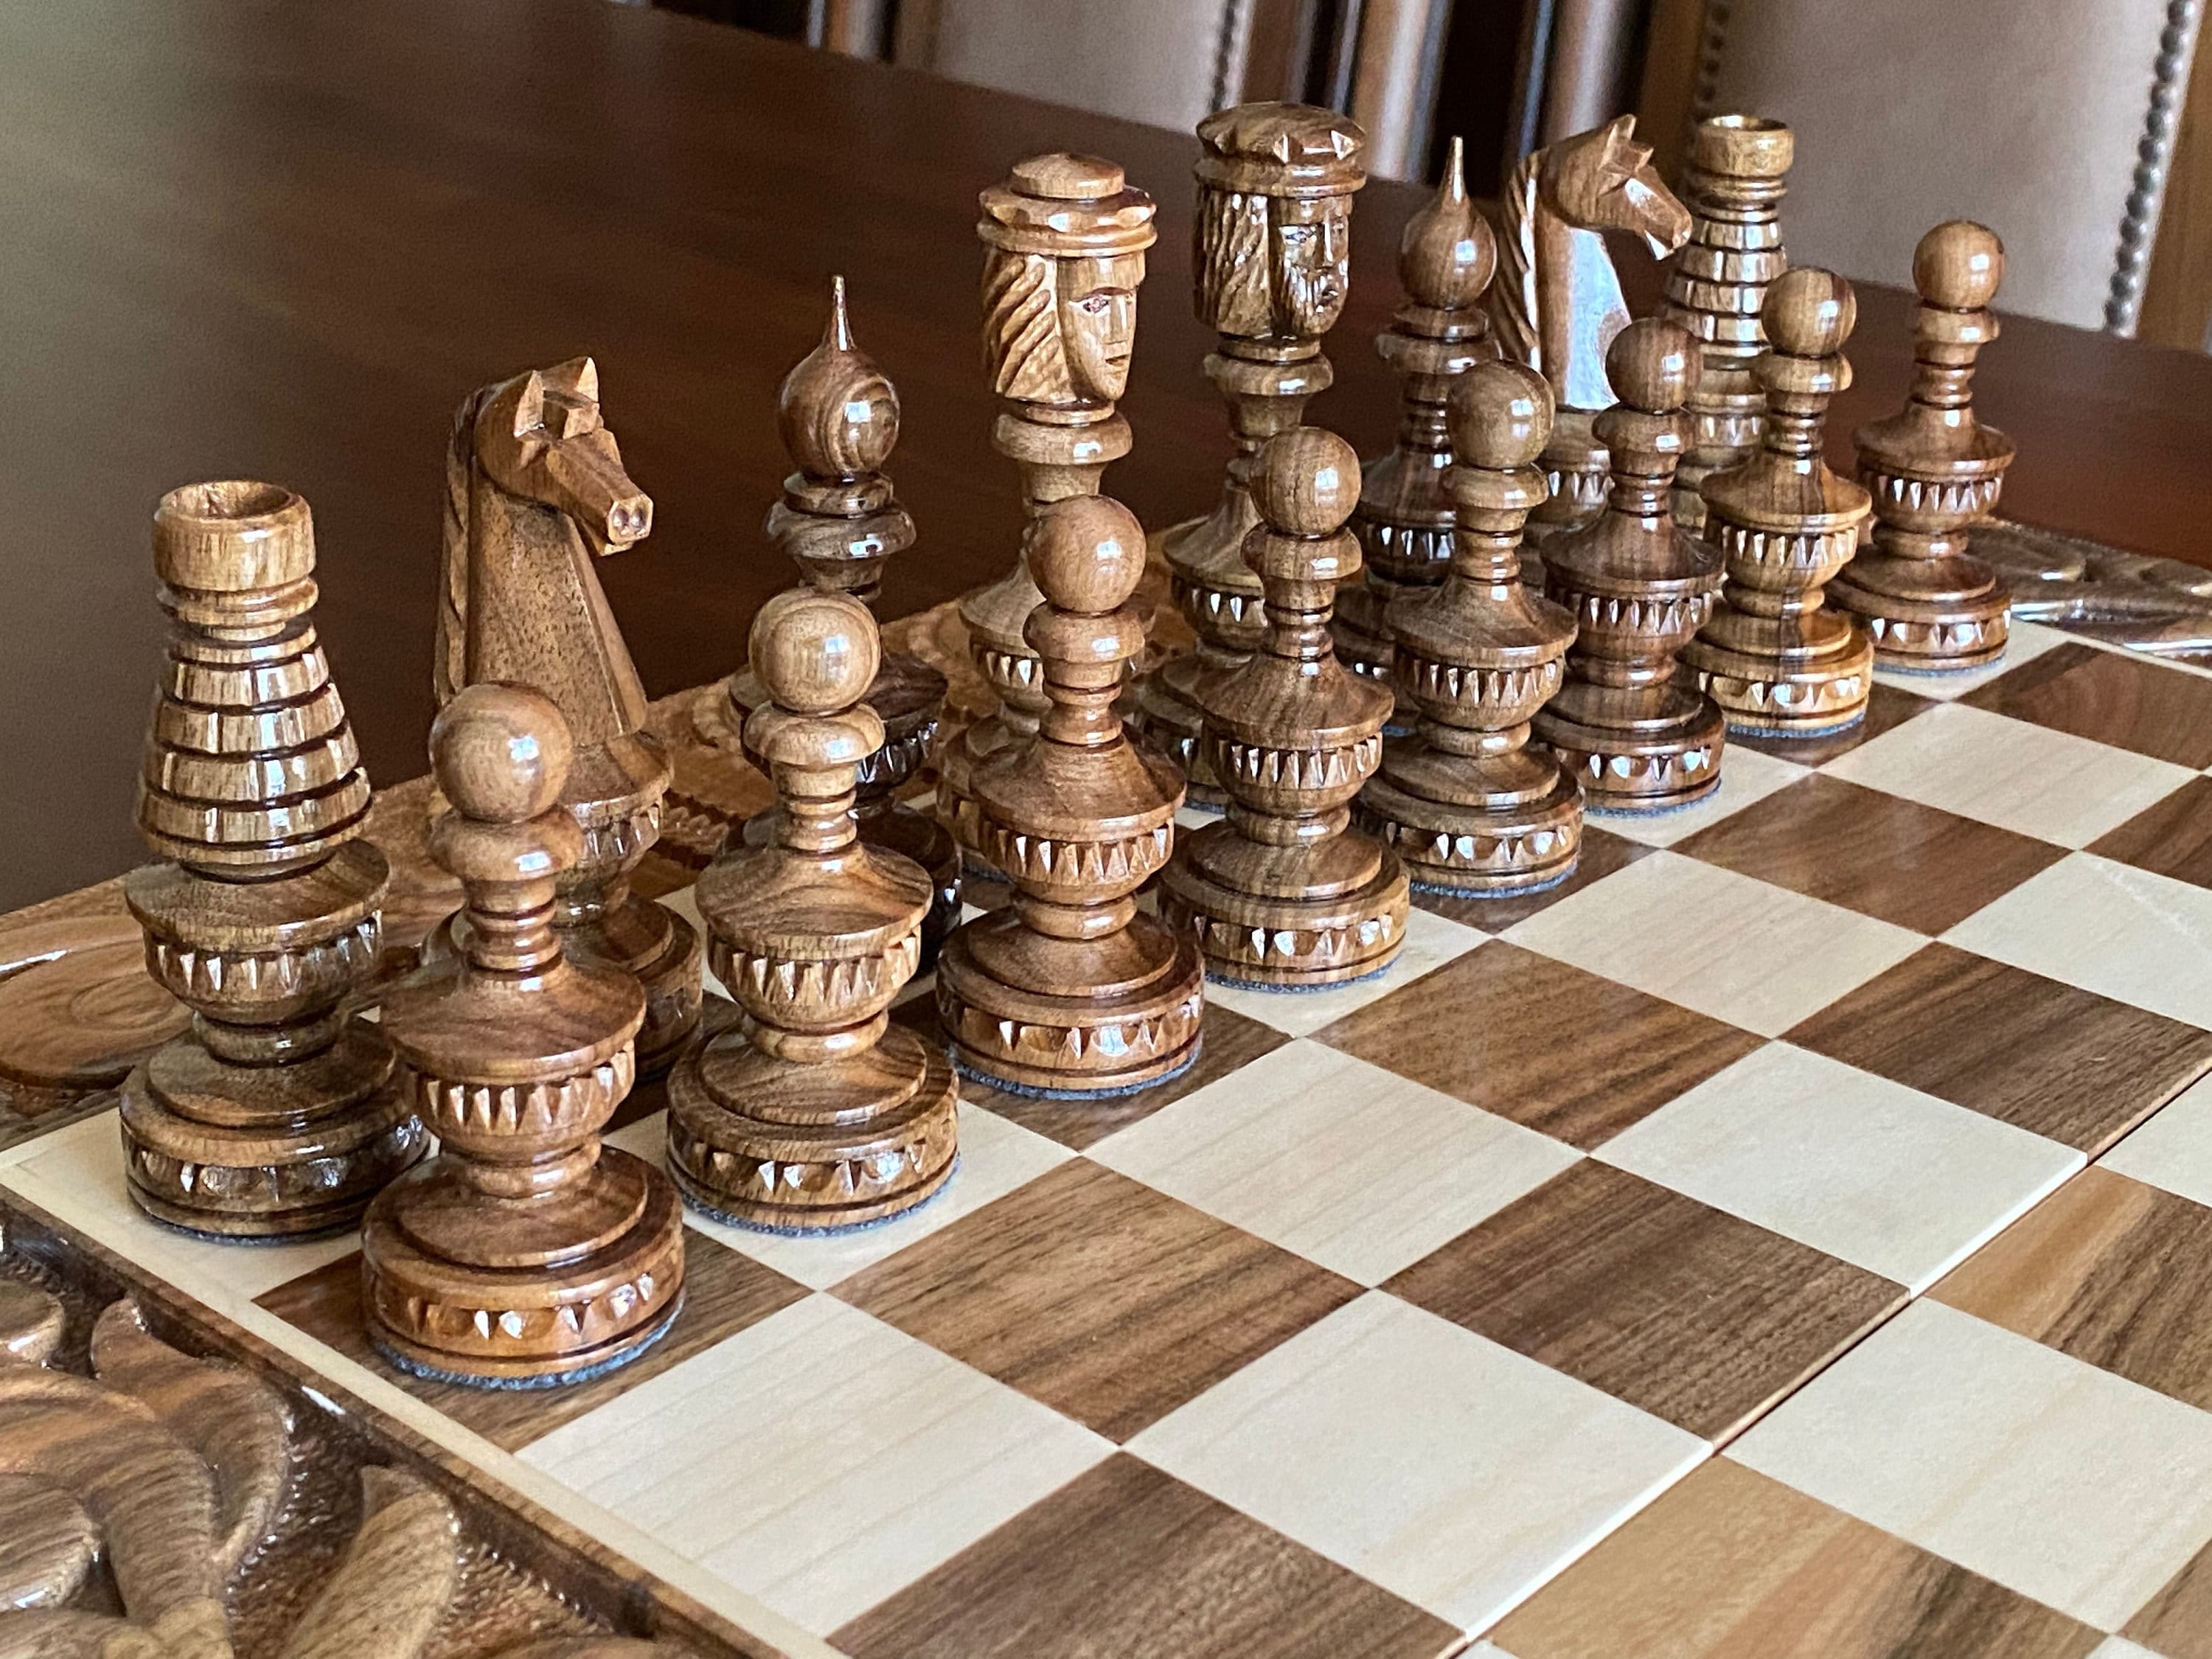 El ajedrez asume, como propios, los principios del juego limpio